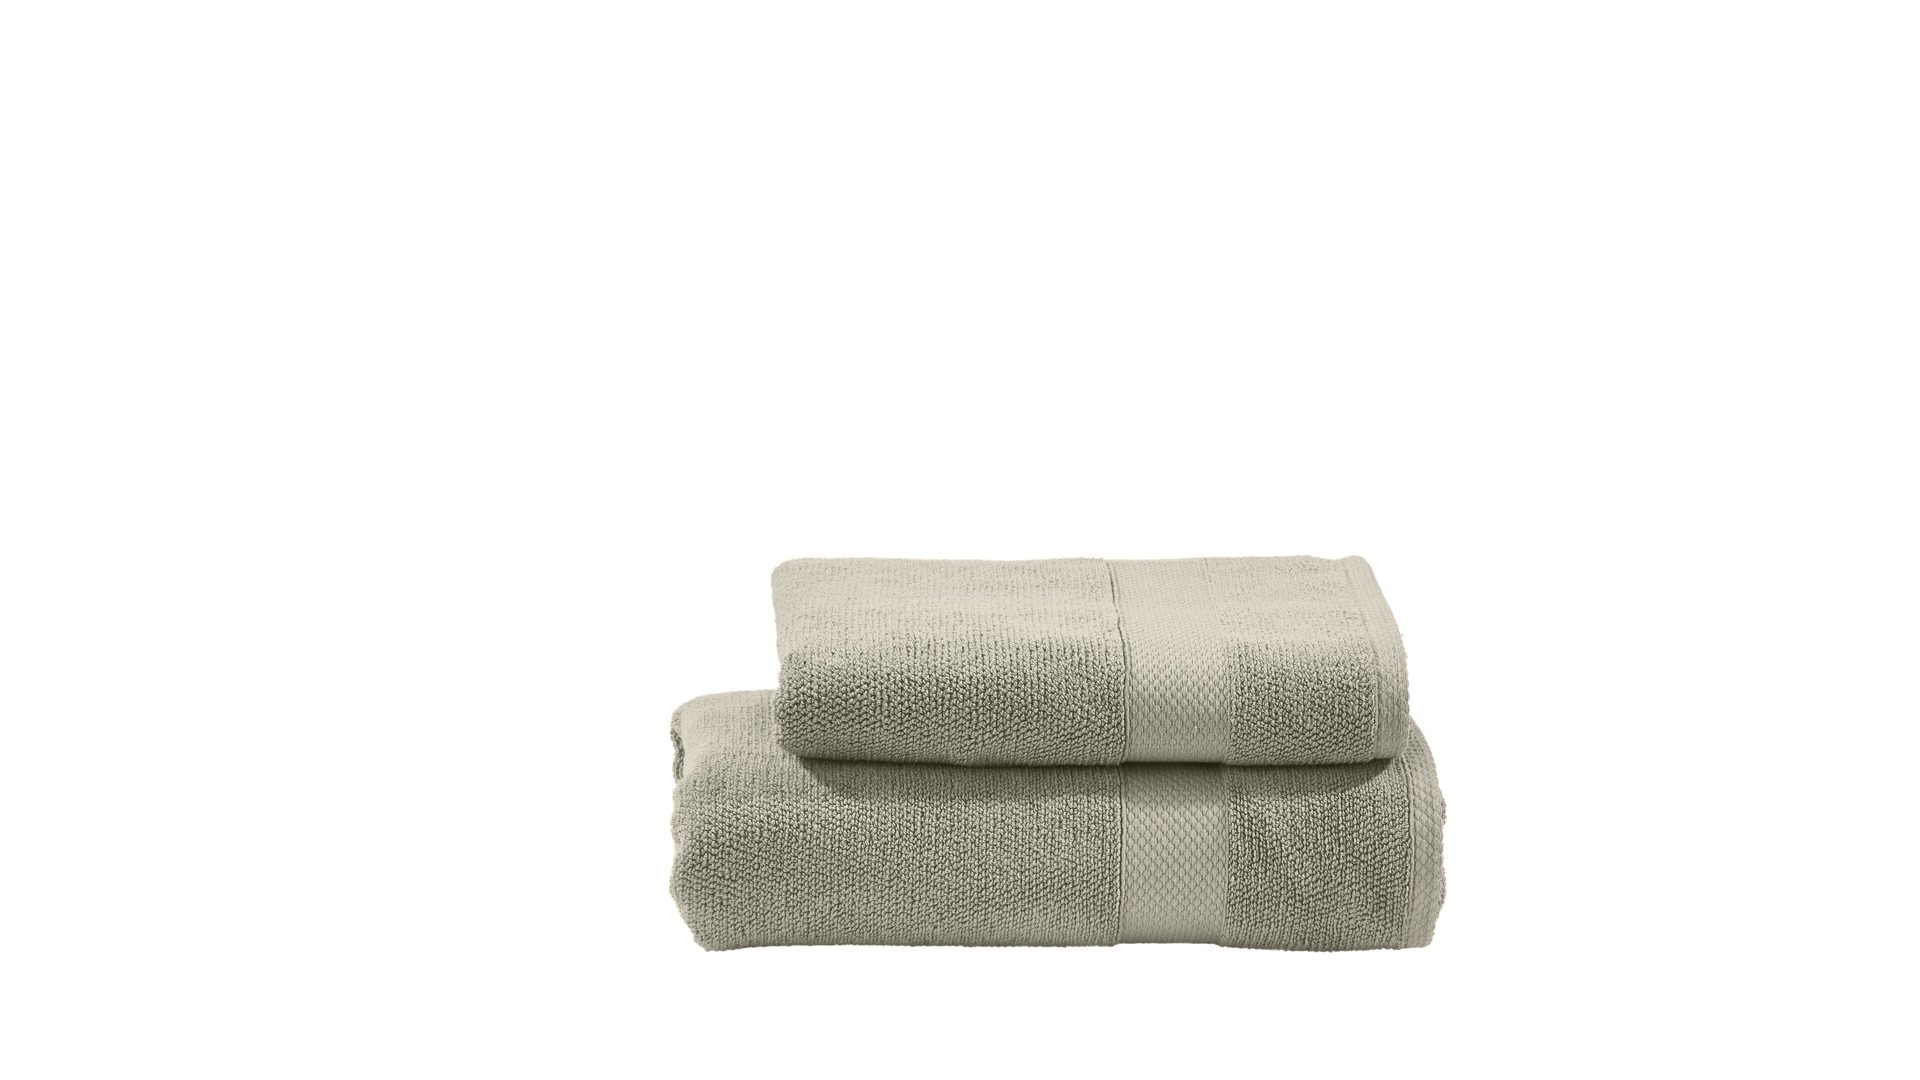 Handtuch-Set Done® by karabel home company aus Stoff in Beige DONE® Handtuch-Set Deluxe bzw. Heimtextilien taupefarbene Baumwolle  – zweiteilig